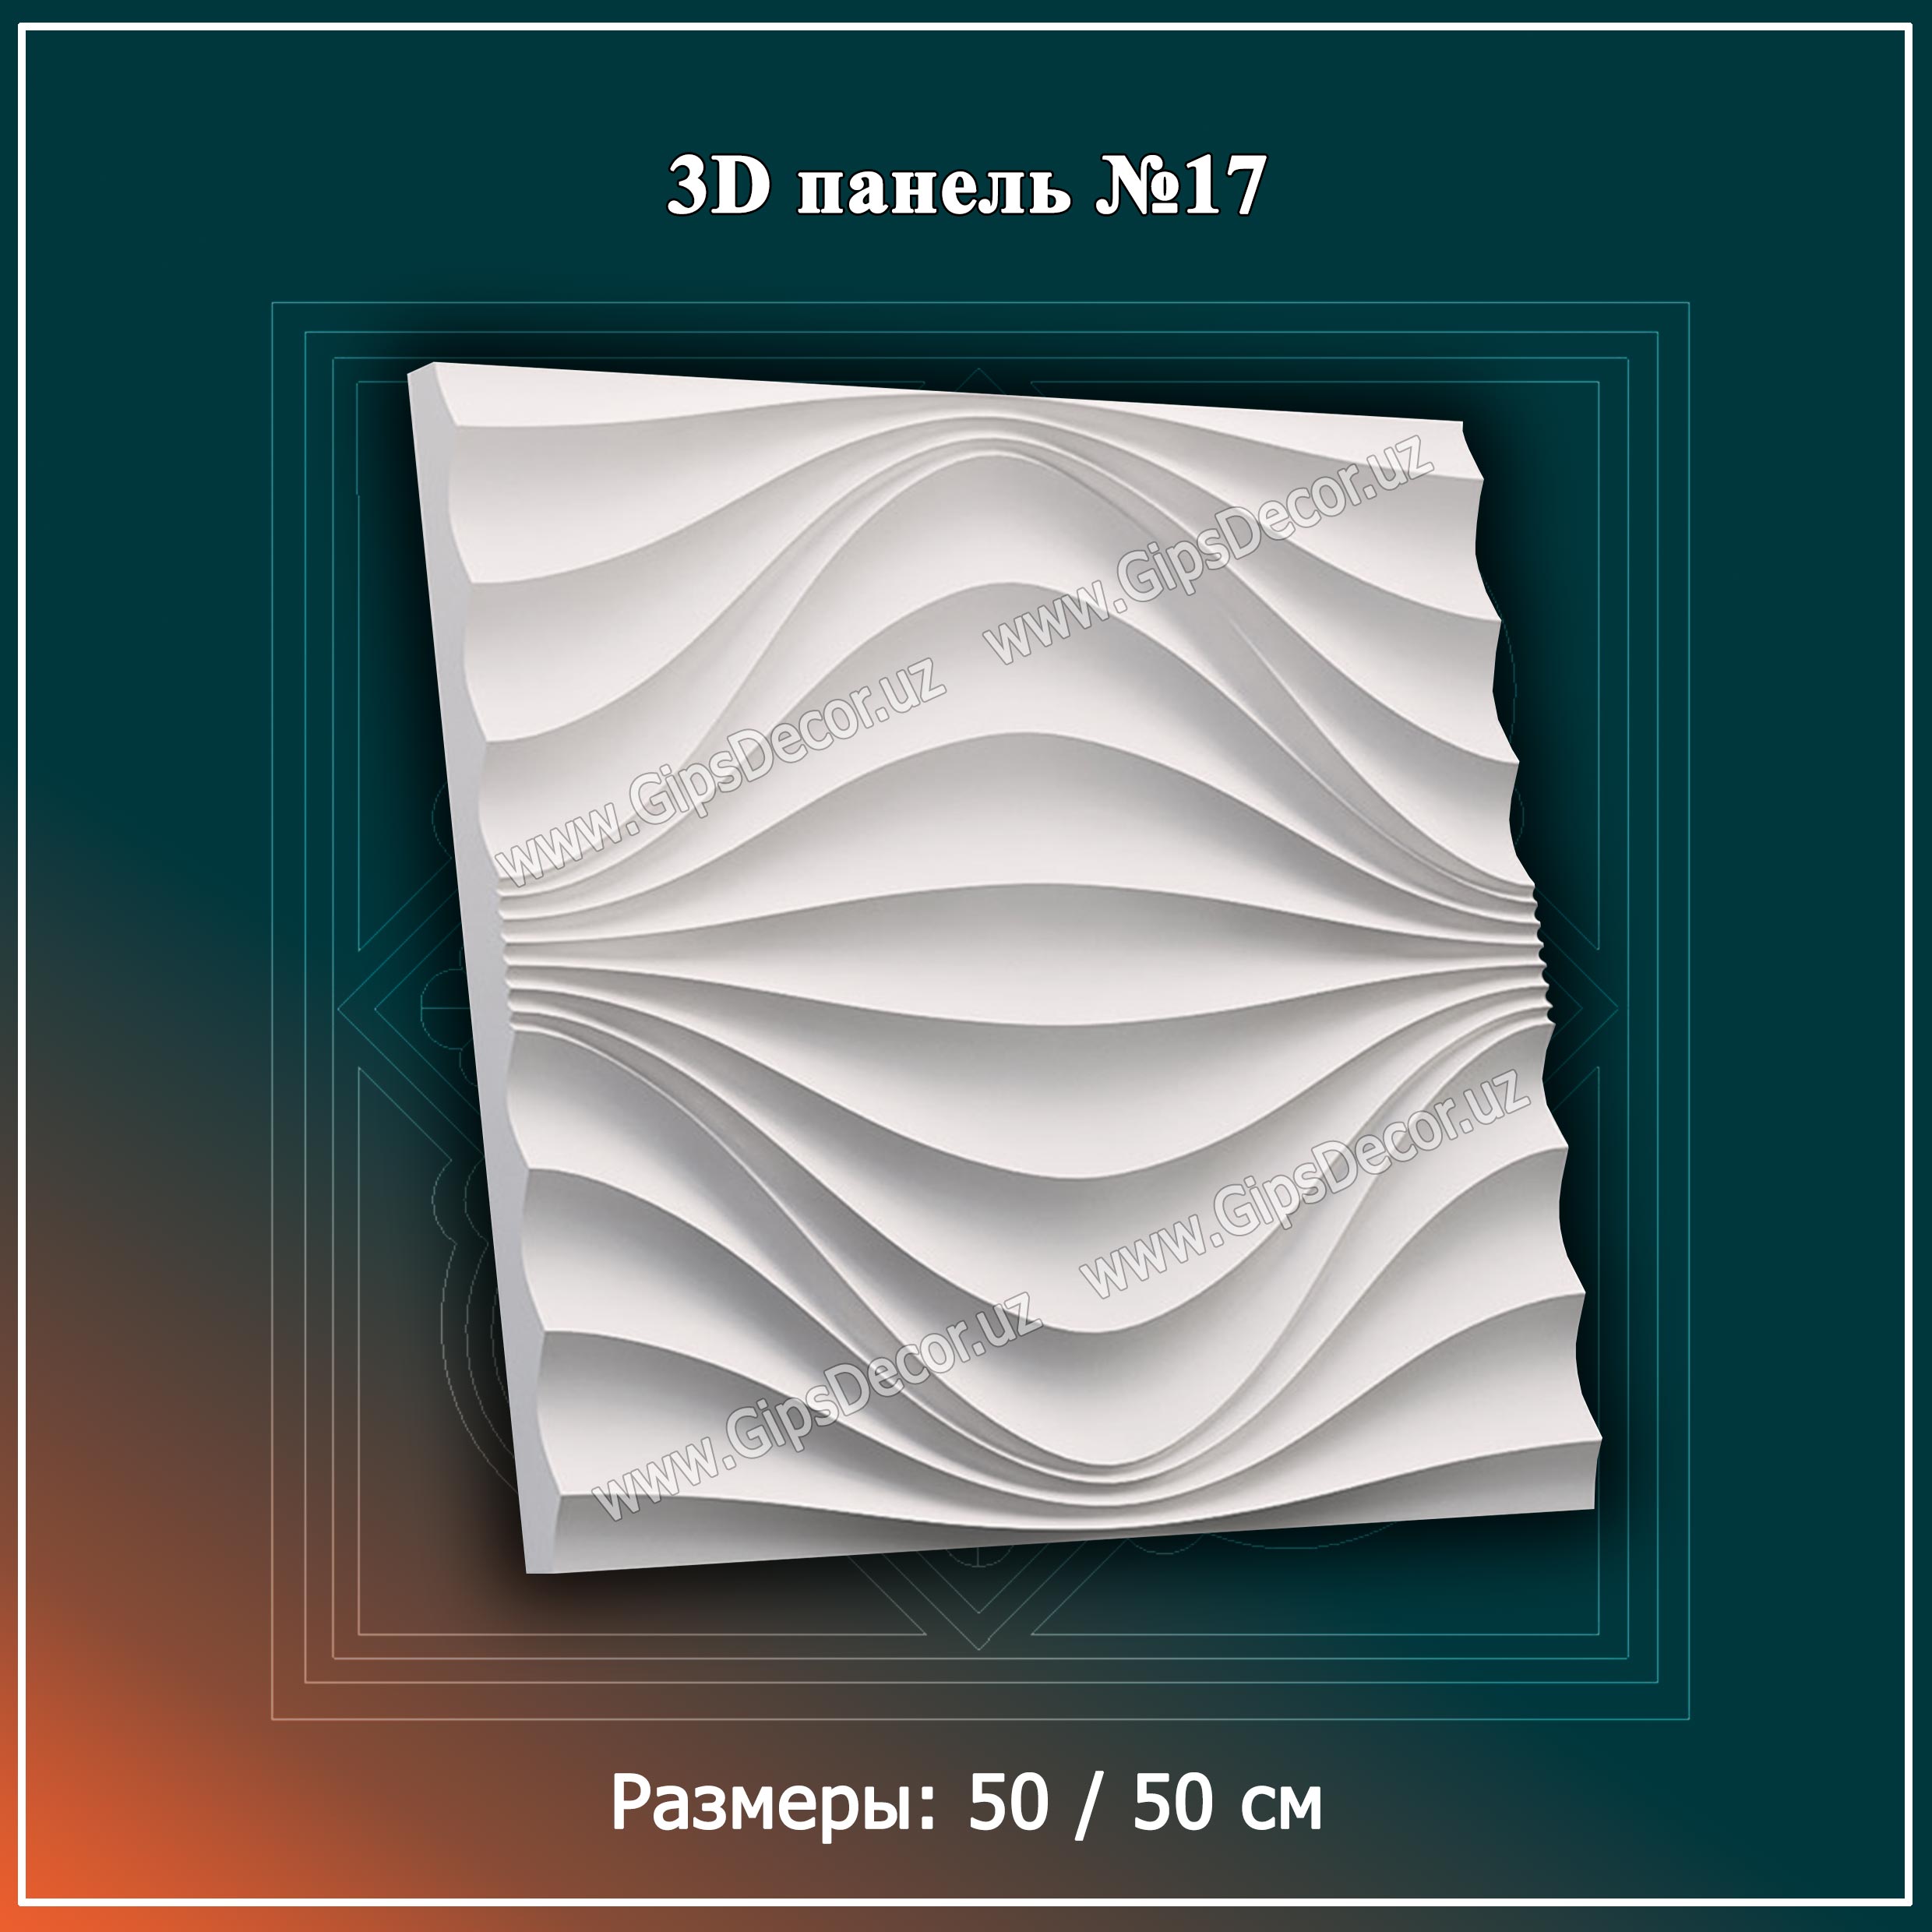 3D панель №17